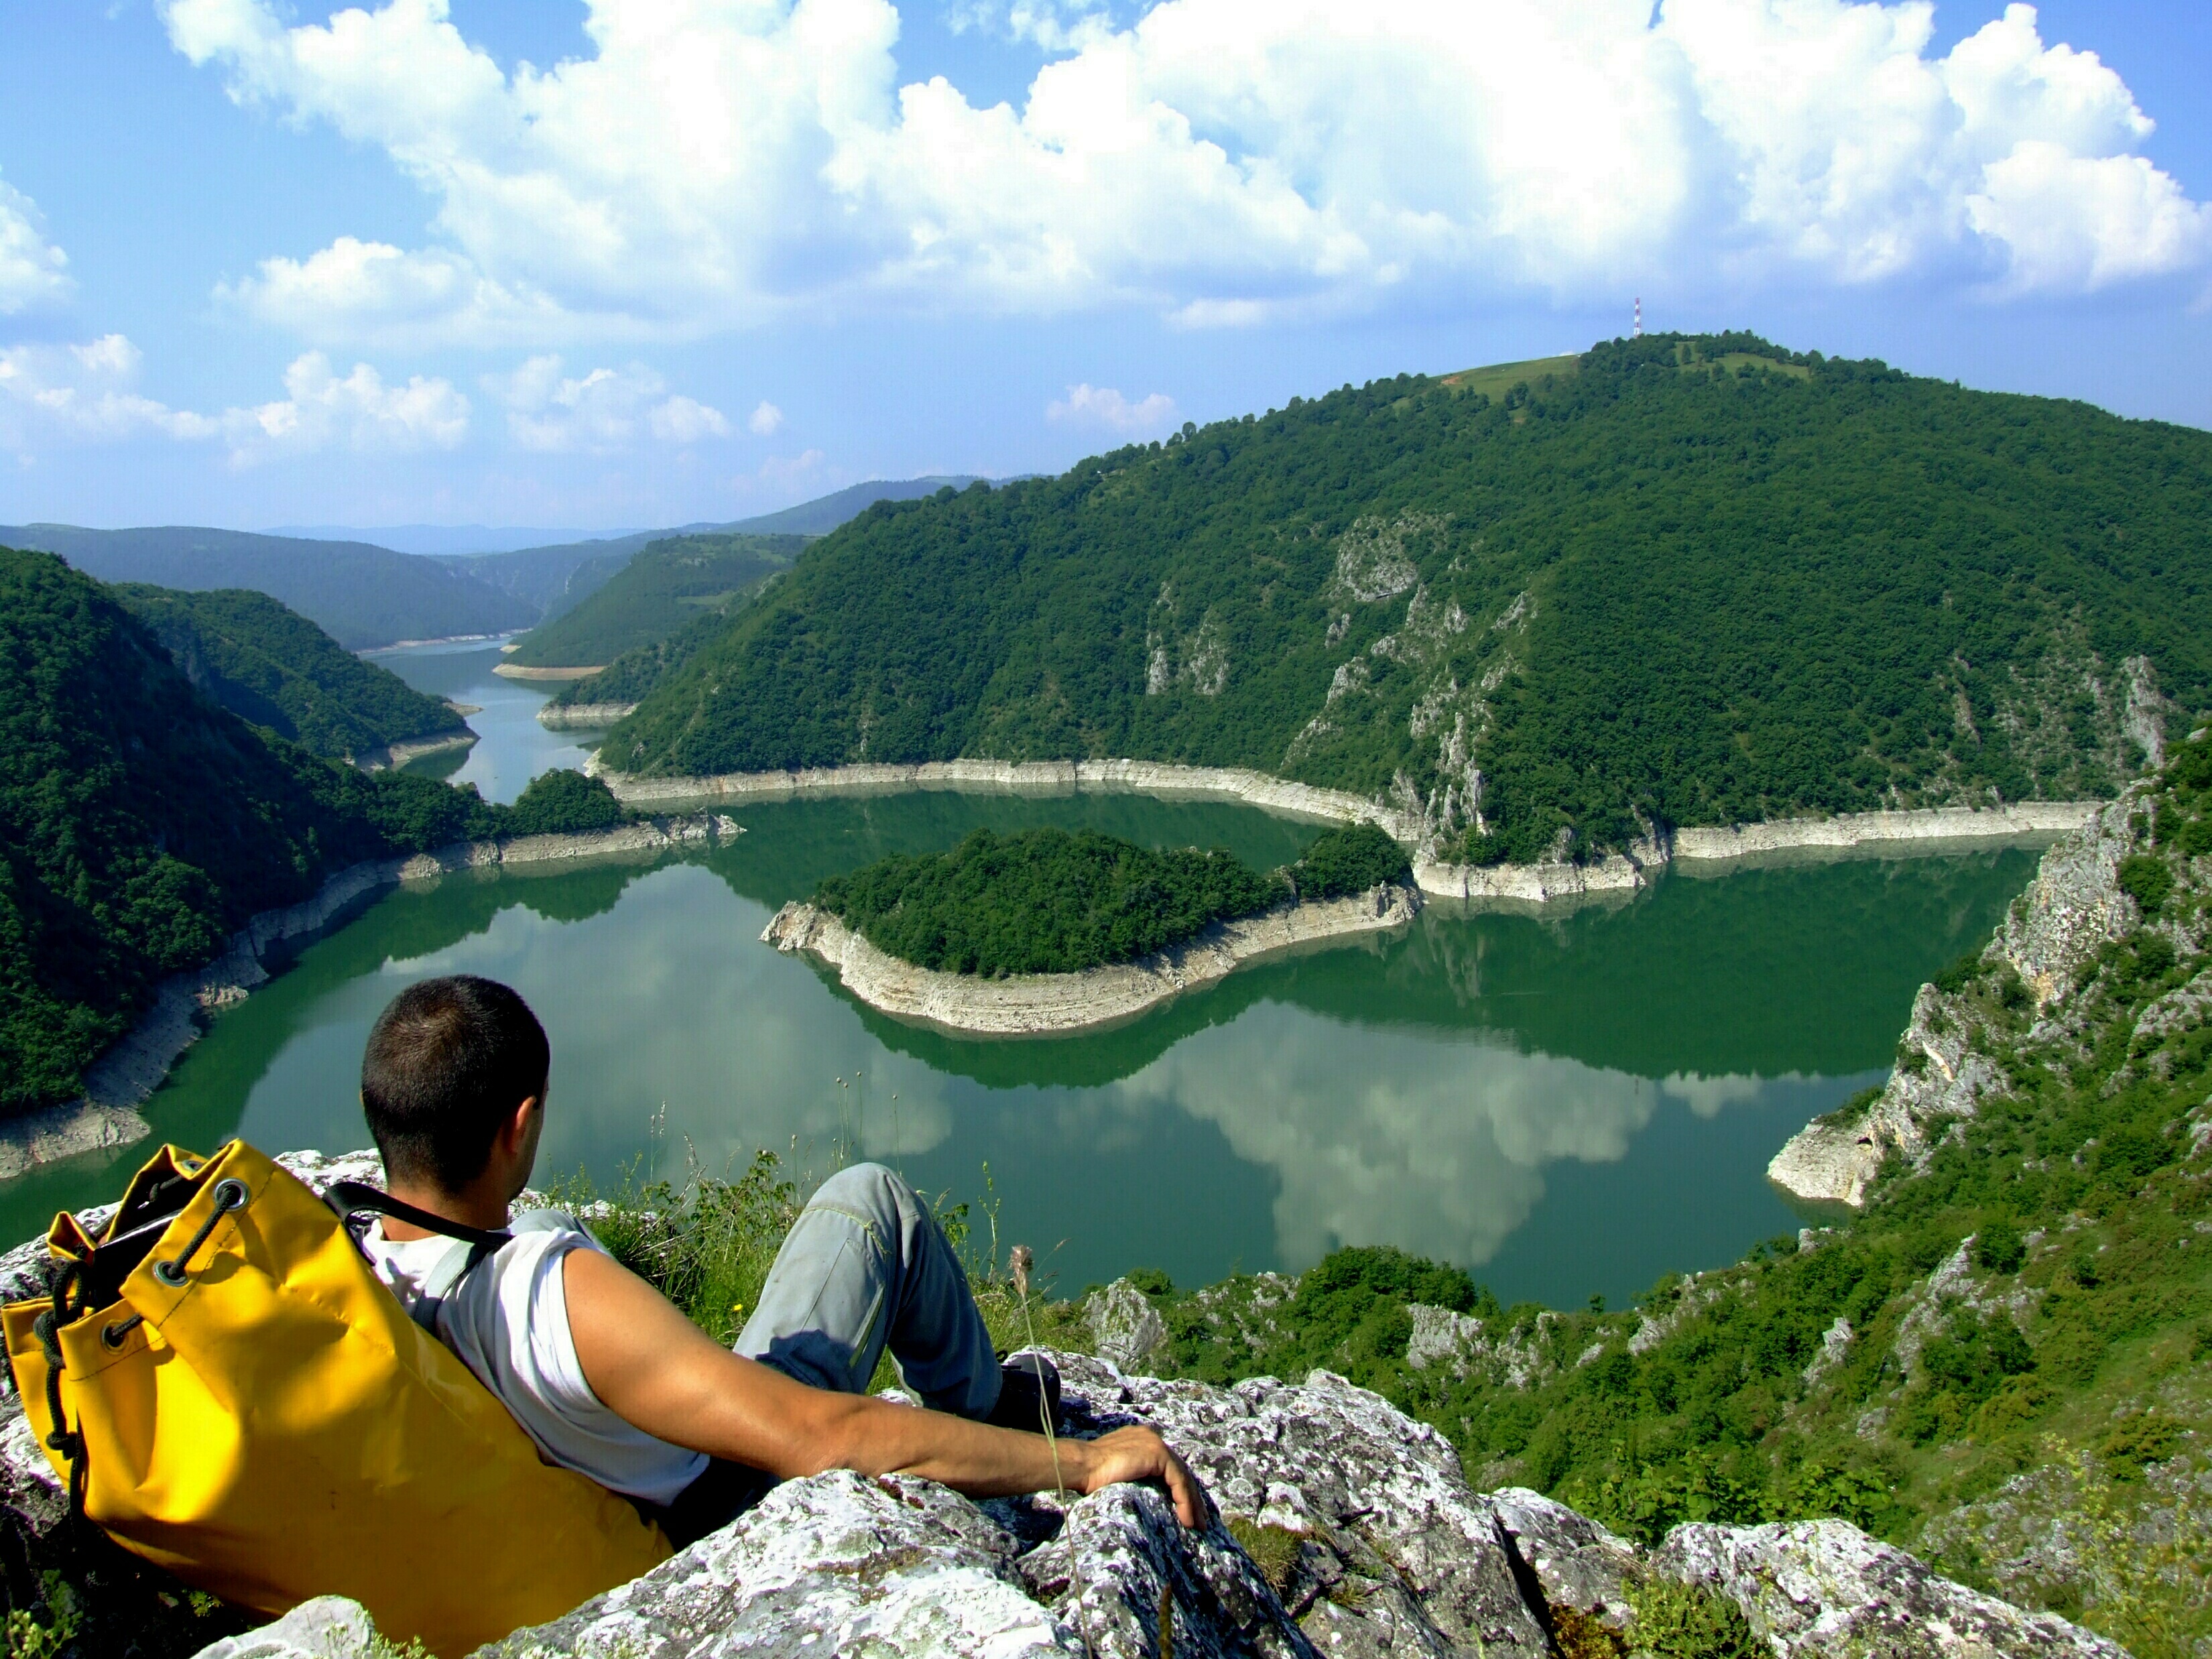 serbia tourism 2022